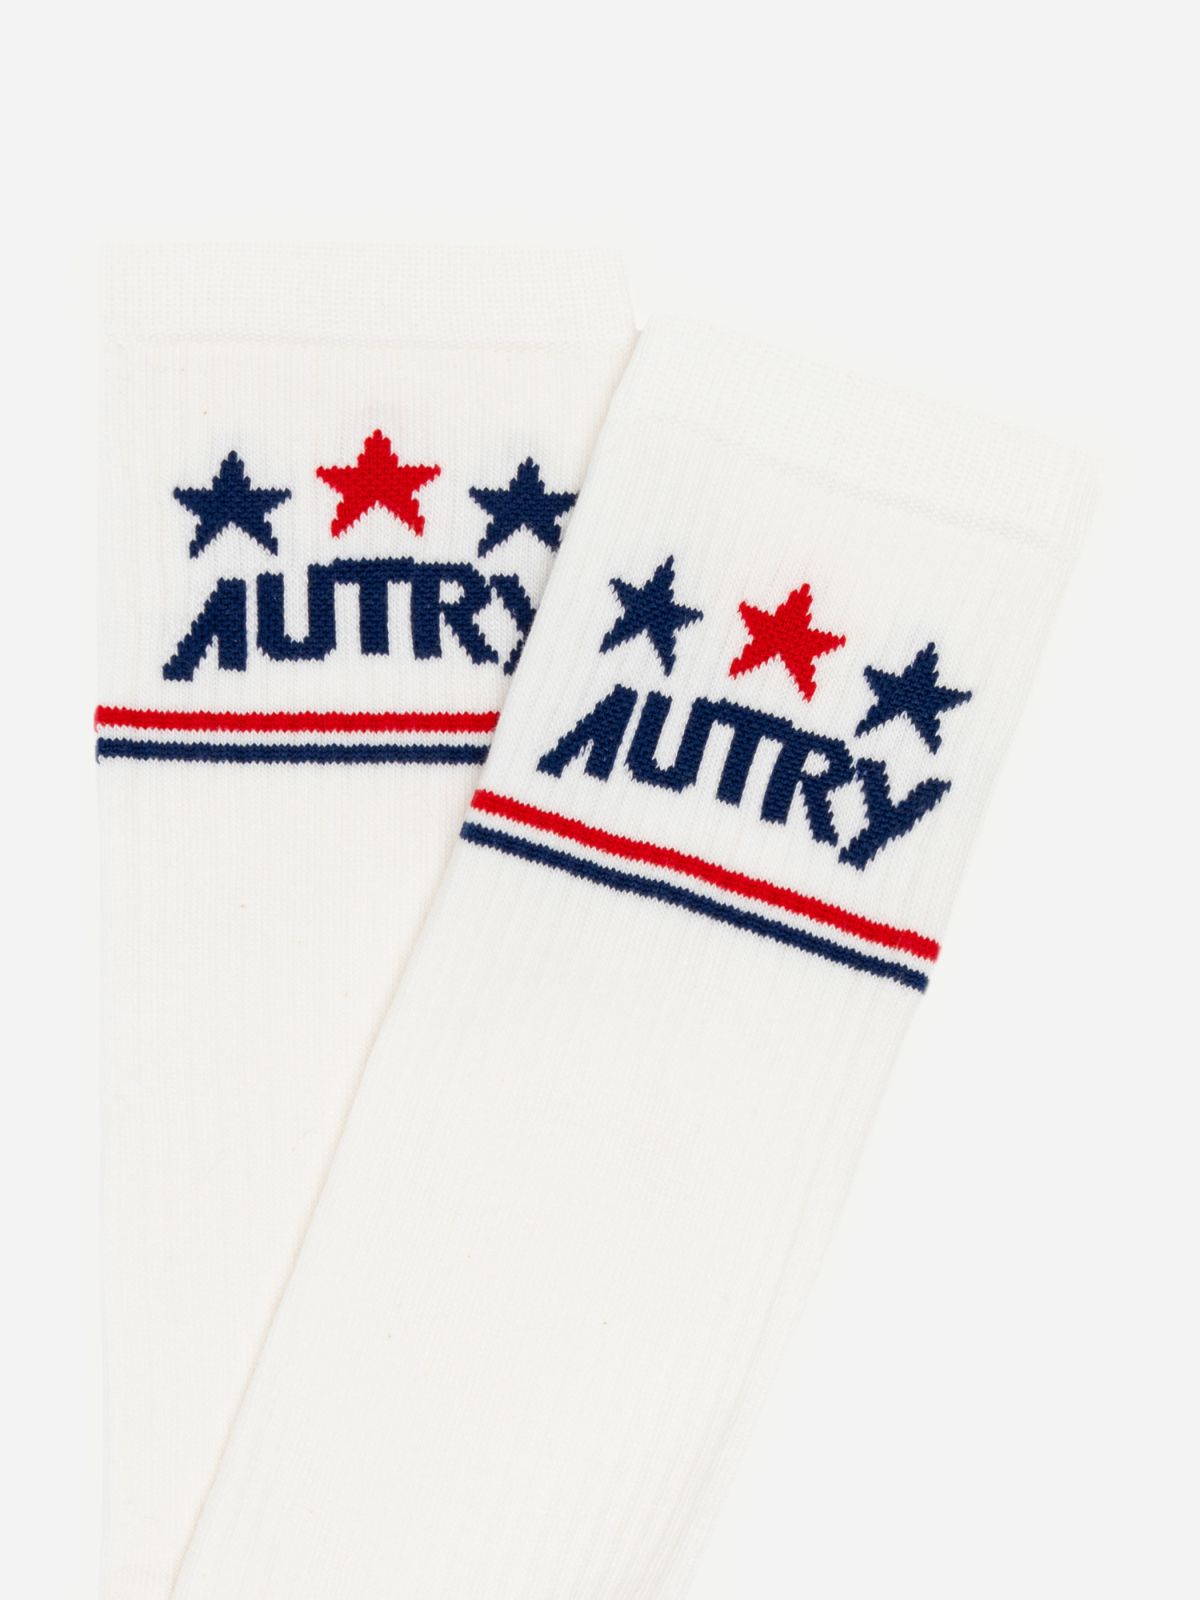  גרביים עם הדפס לוגו וכוכבים / נשים של AUTRY